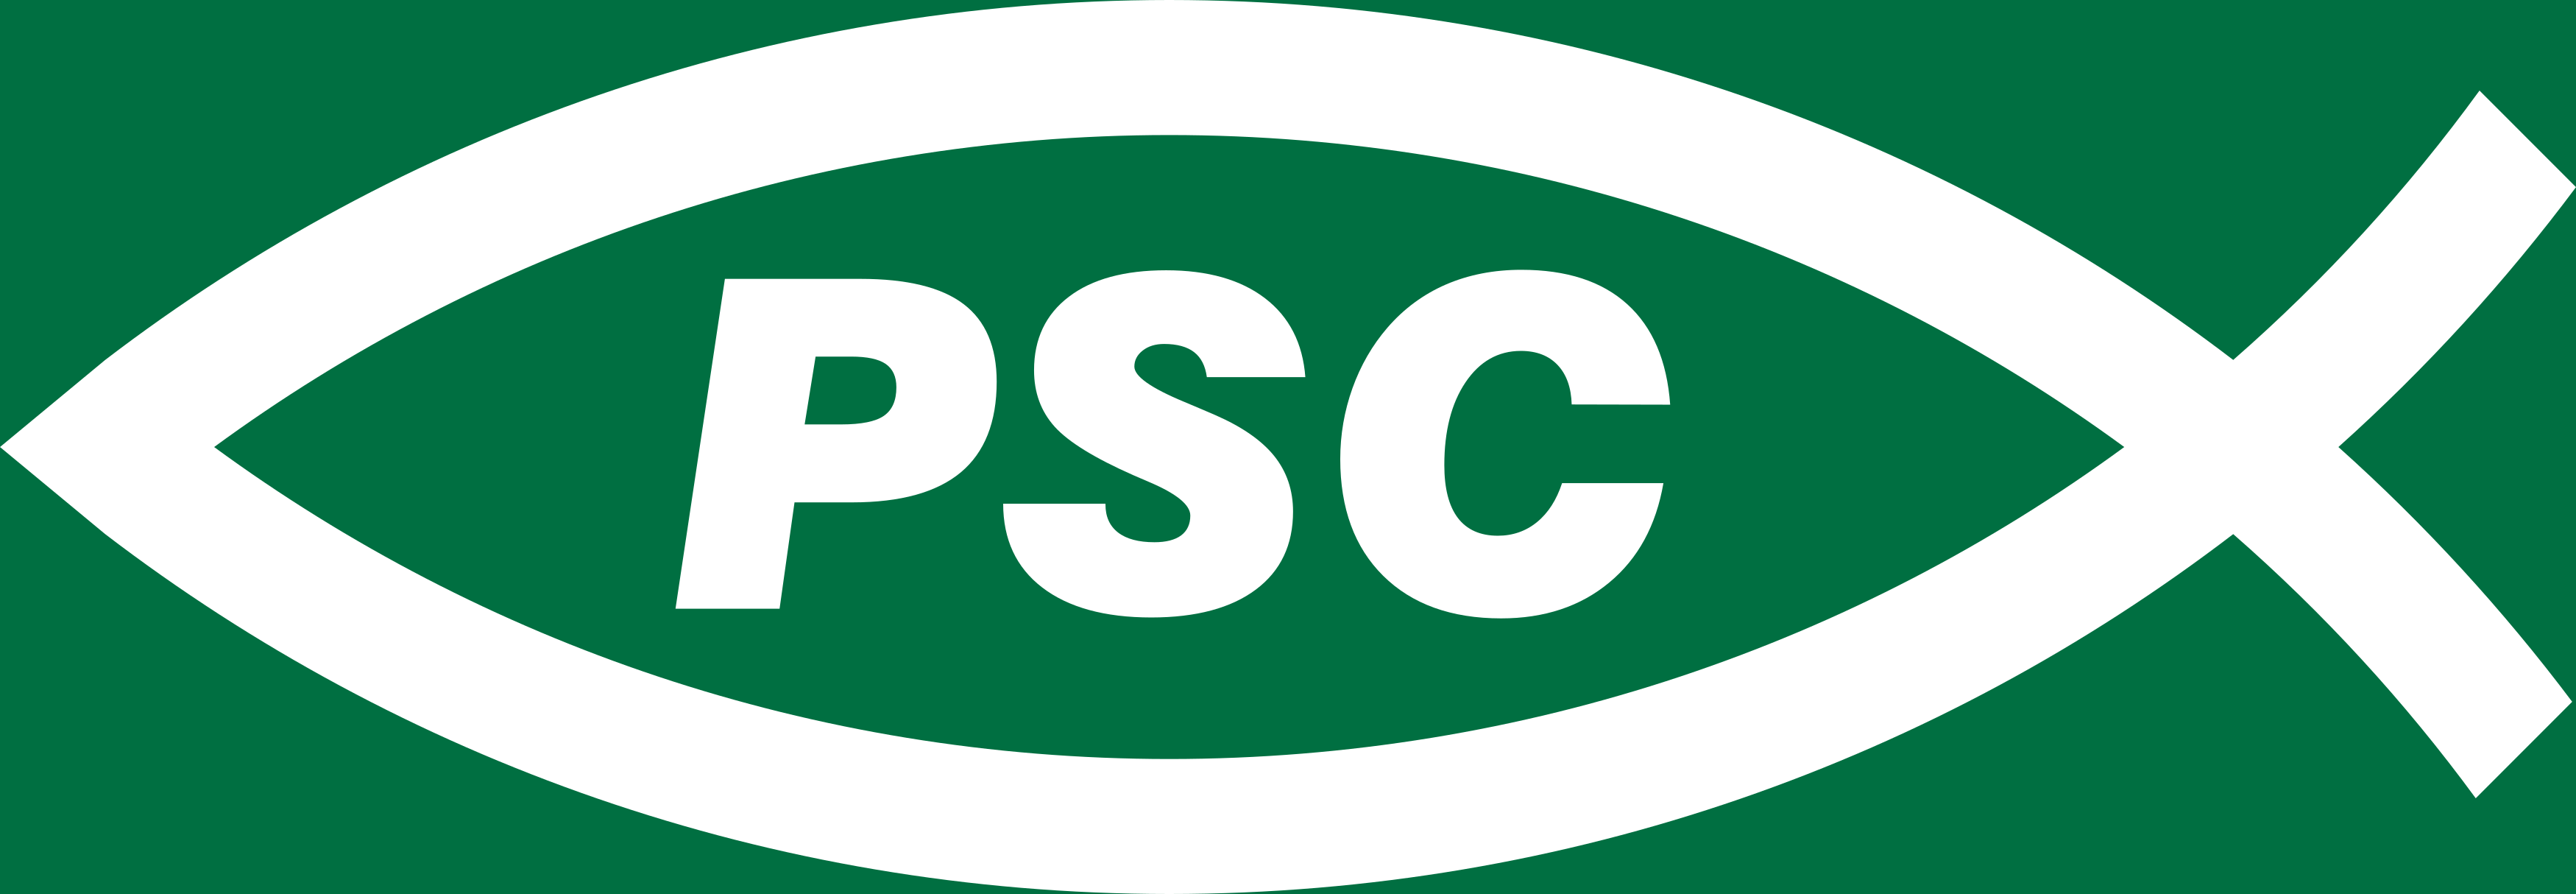 PSC Logo - Partido Social Cristão Logo.